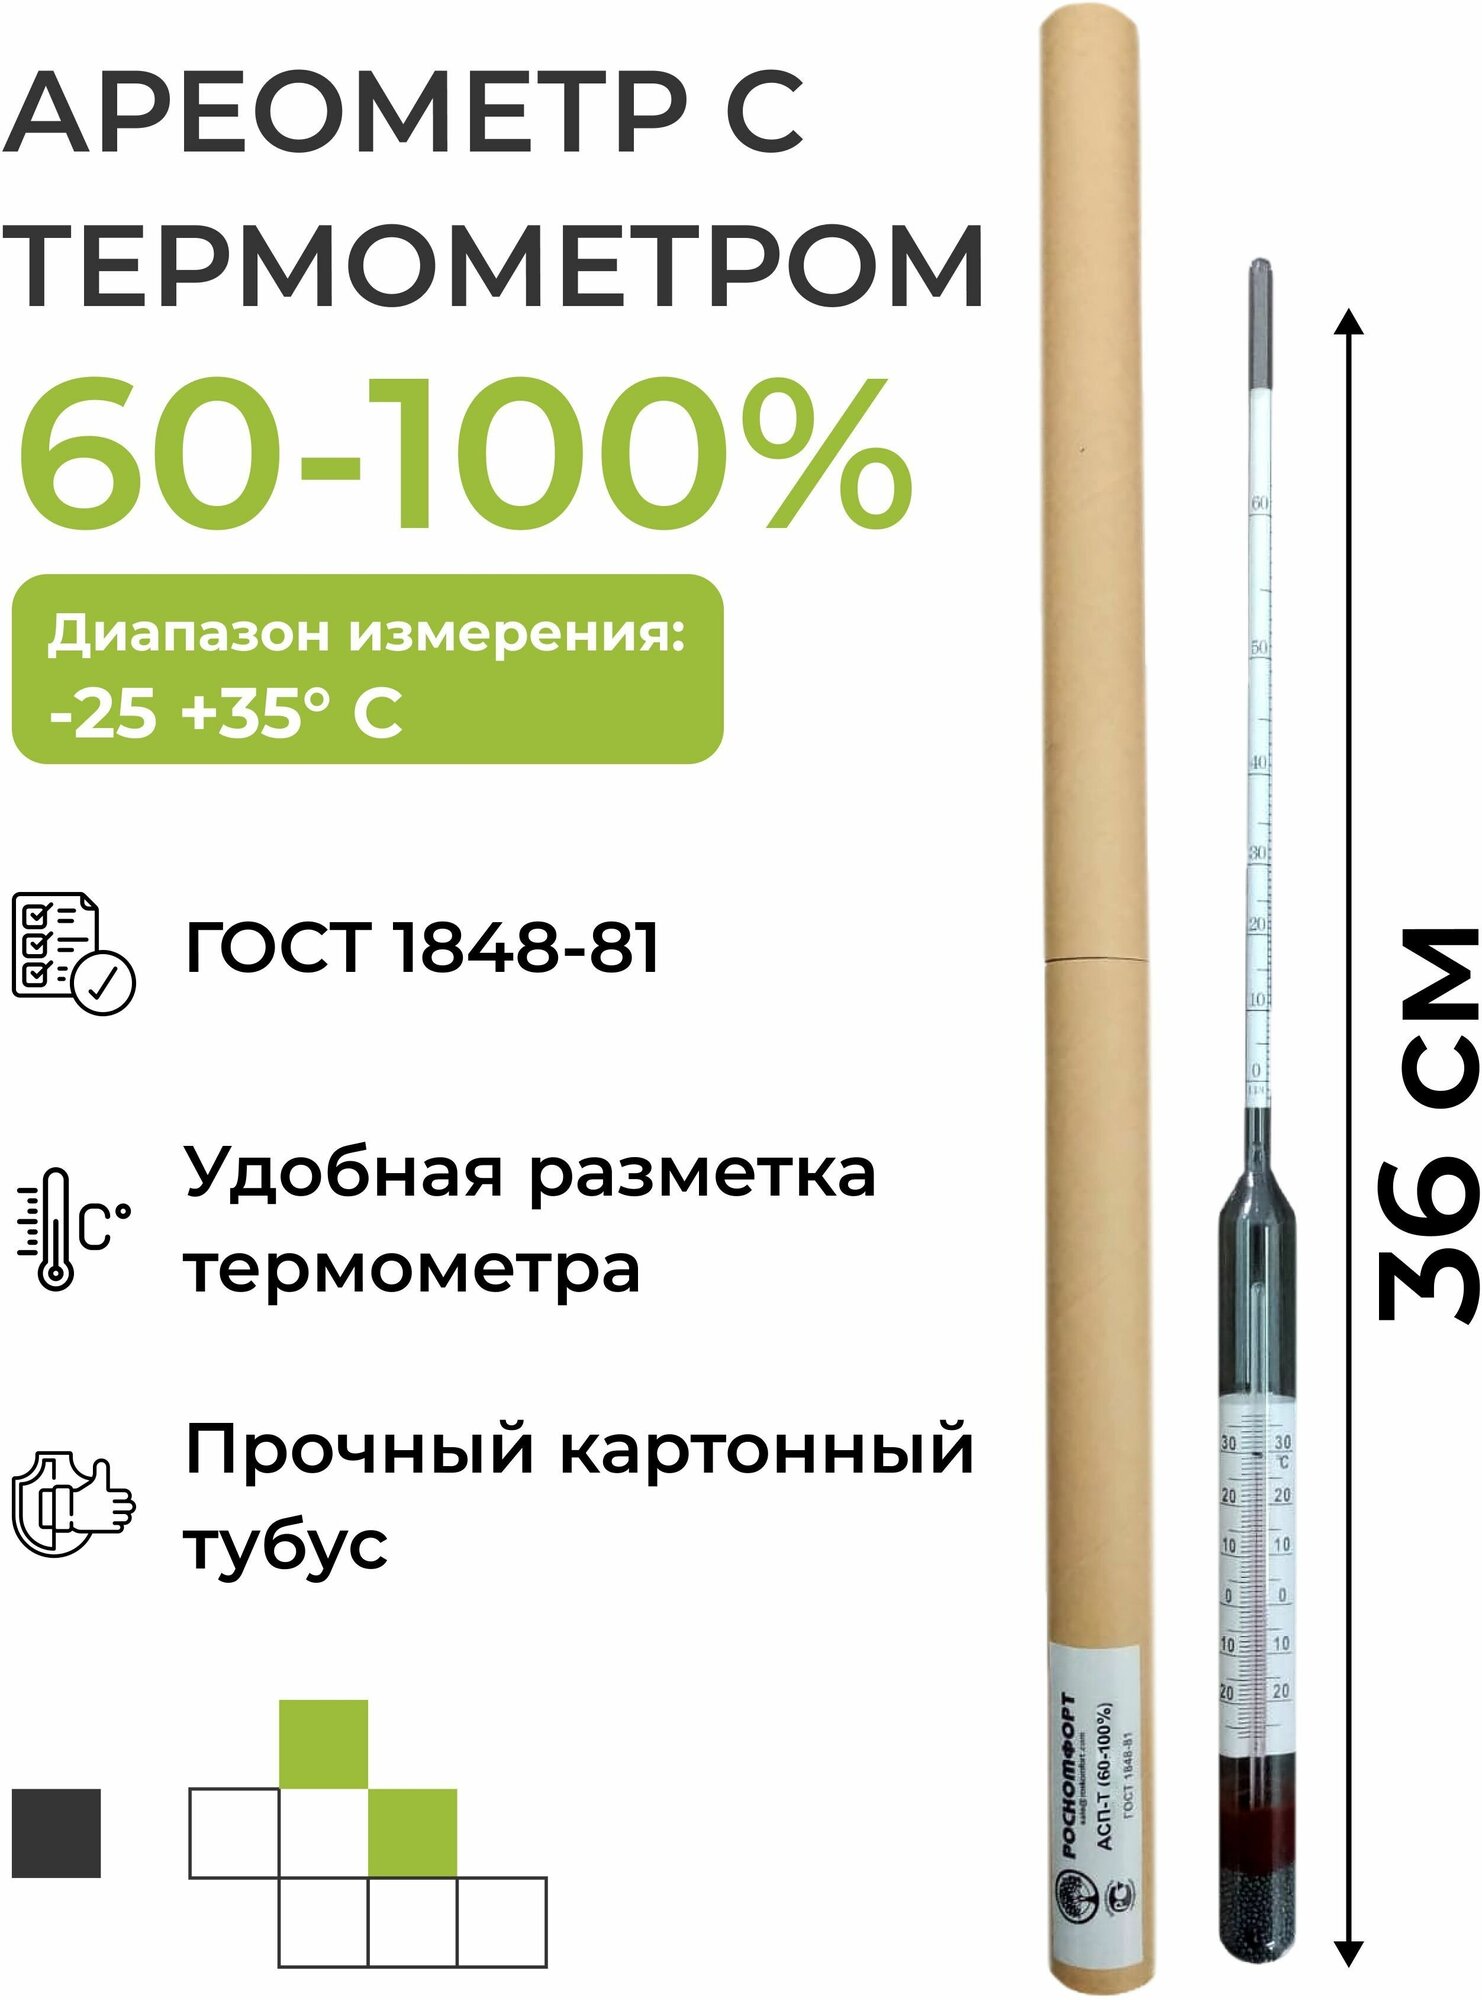 Ареометр с термометром АСП-Т (60-100%)